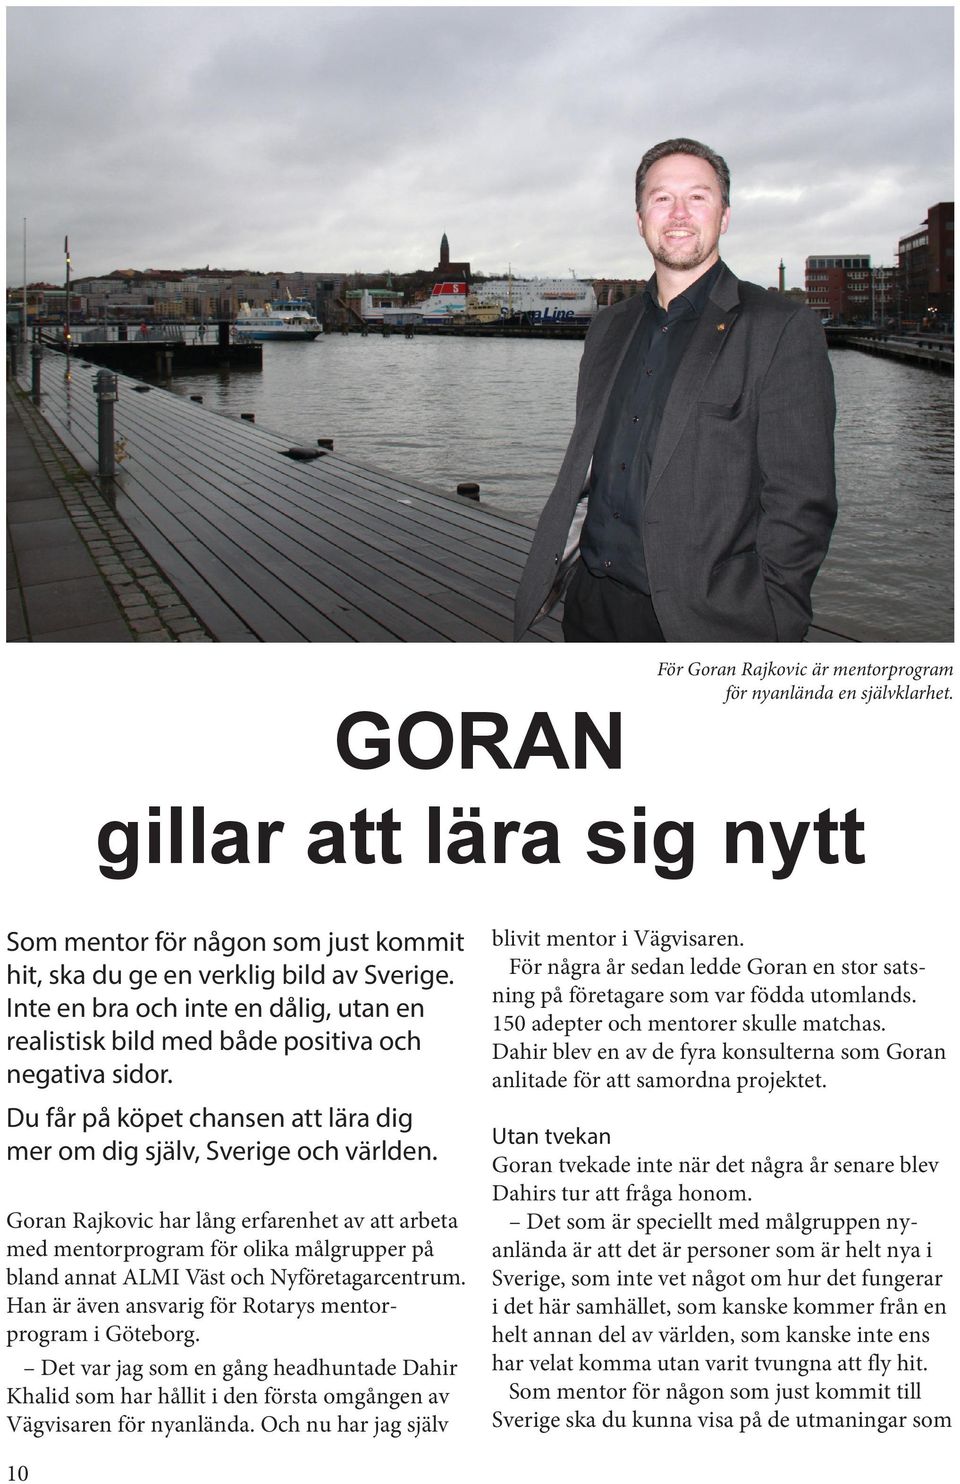 Goran Rajkovic har lång erfarenhet av att arbeta med mentorprogram för olika målgrupper på bland annat ALMI Väst och Nyföretagarcentrum. Han är även ansvarig för Rotarys mentorprogram i Göteborg.